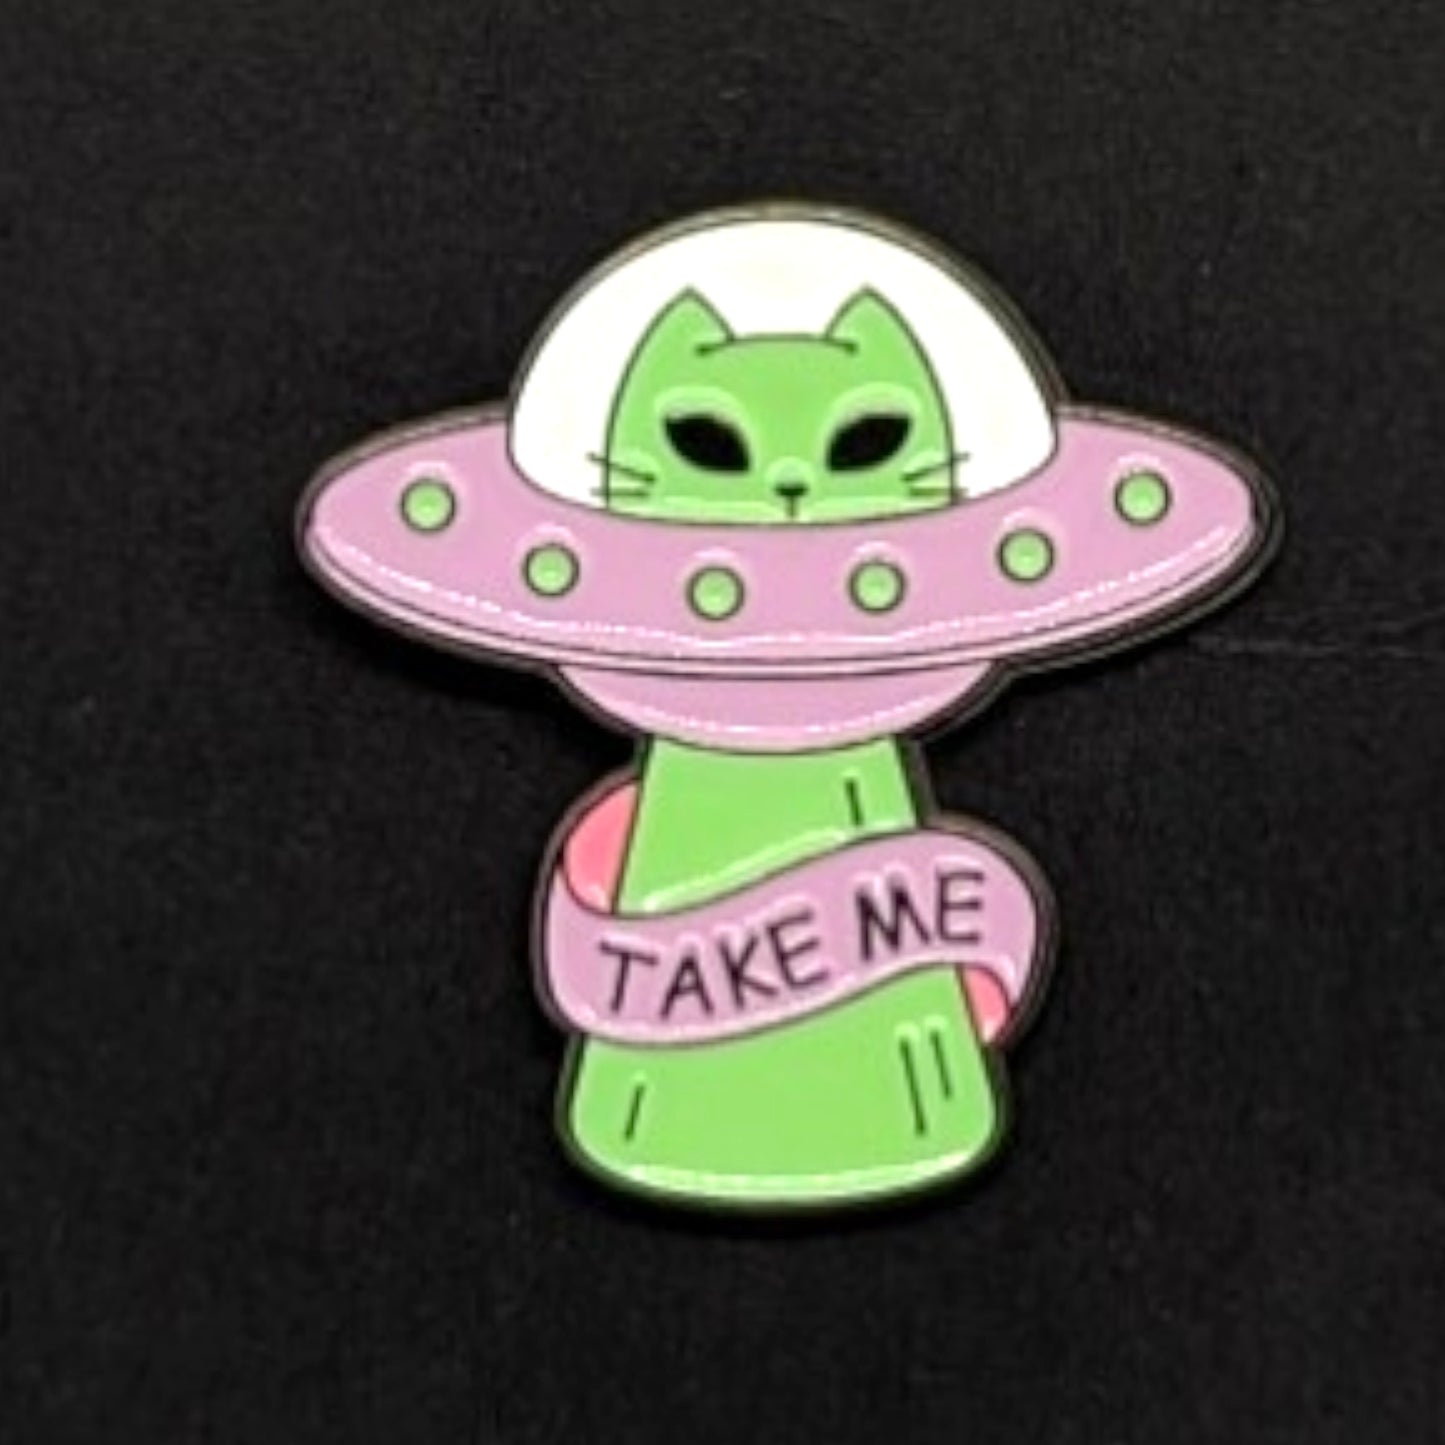 Take me cat alien enamel pin #58